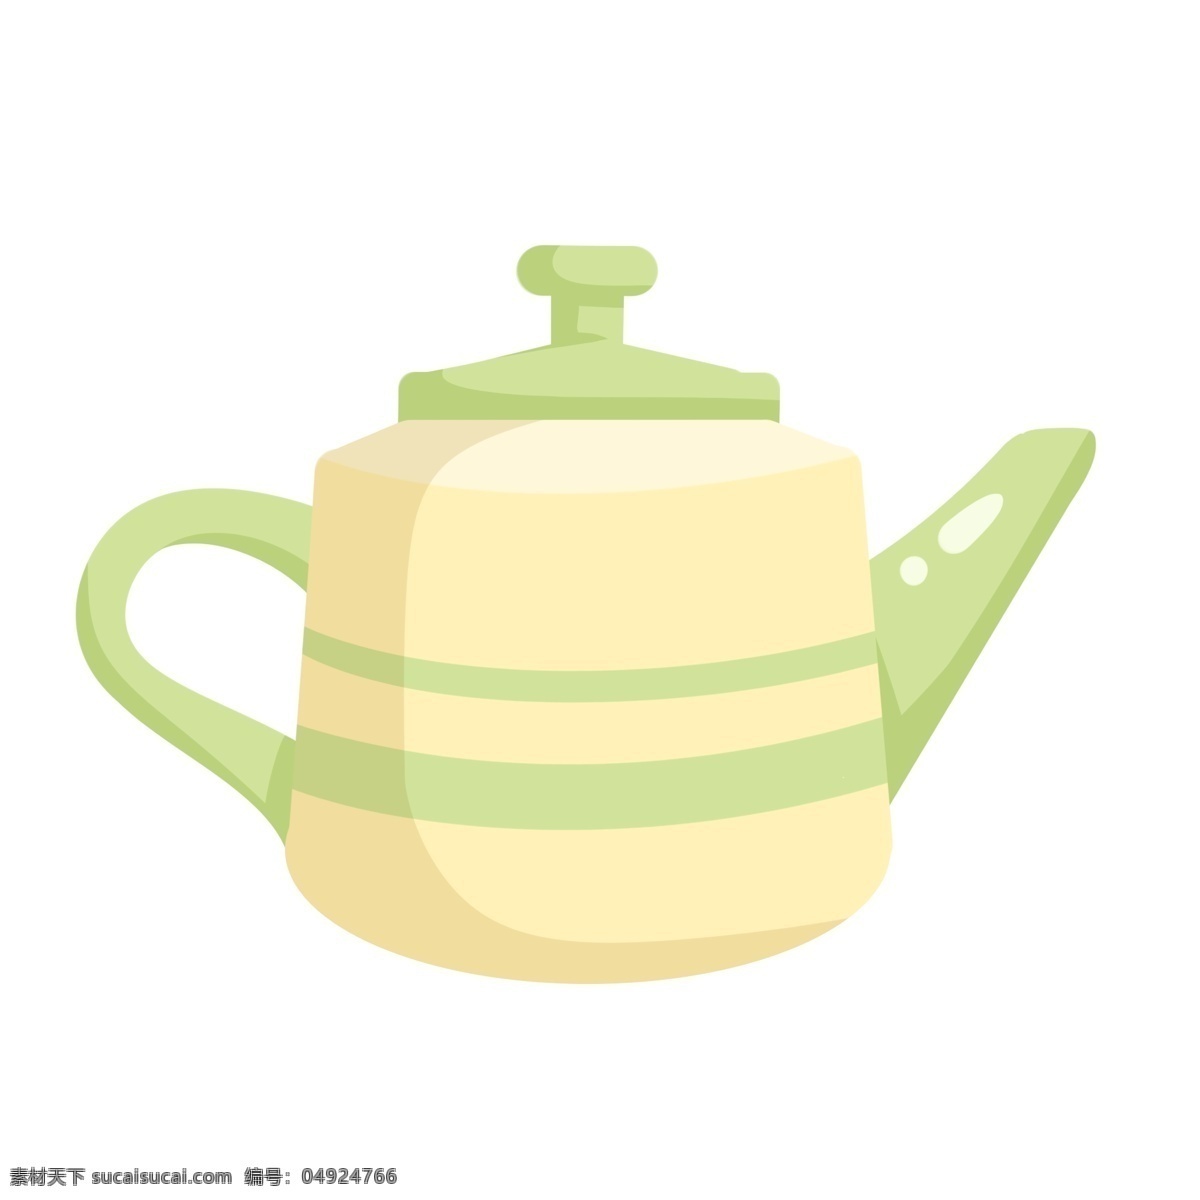 手绘 黄绿色 茶壶 插画 手绘茶壶 水壶 沏茶 泡茶 瓷器茶壶 小壶 好看的茶壶 绿色盖子